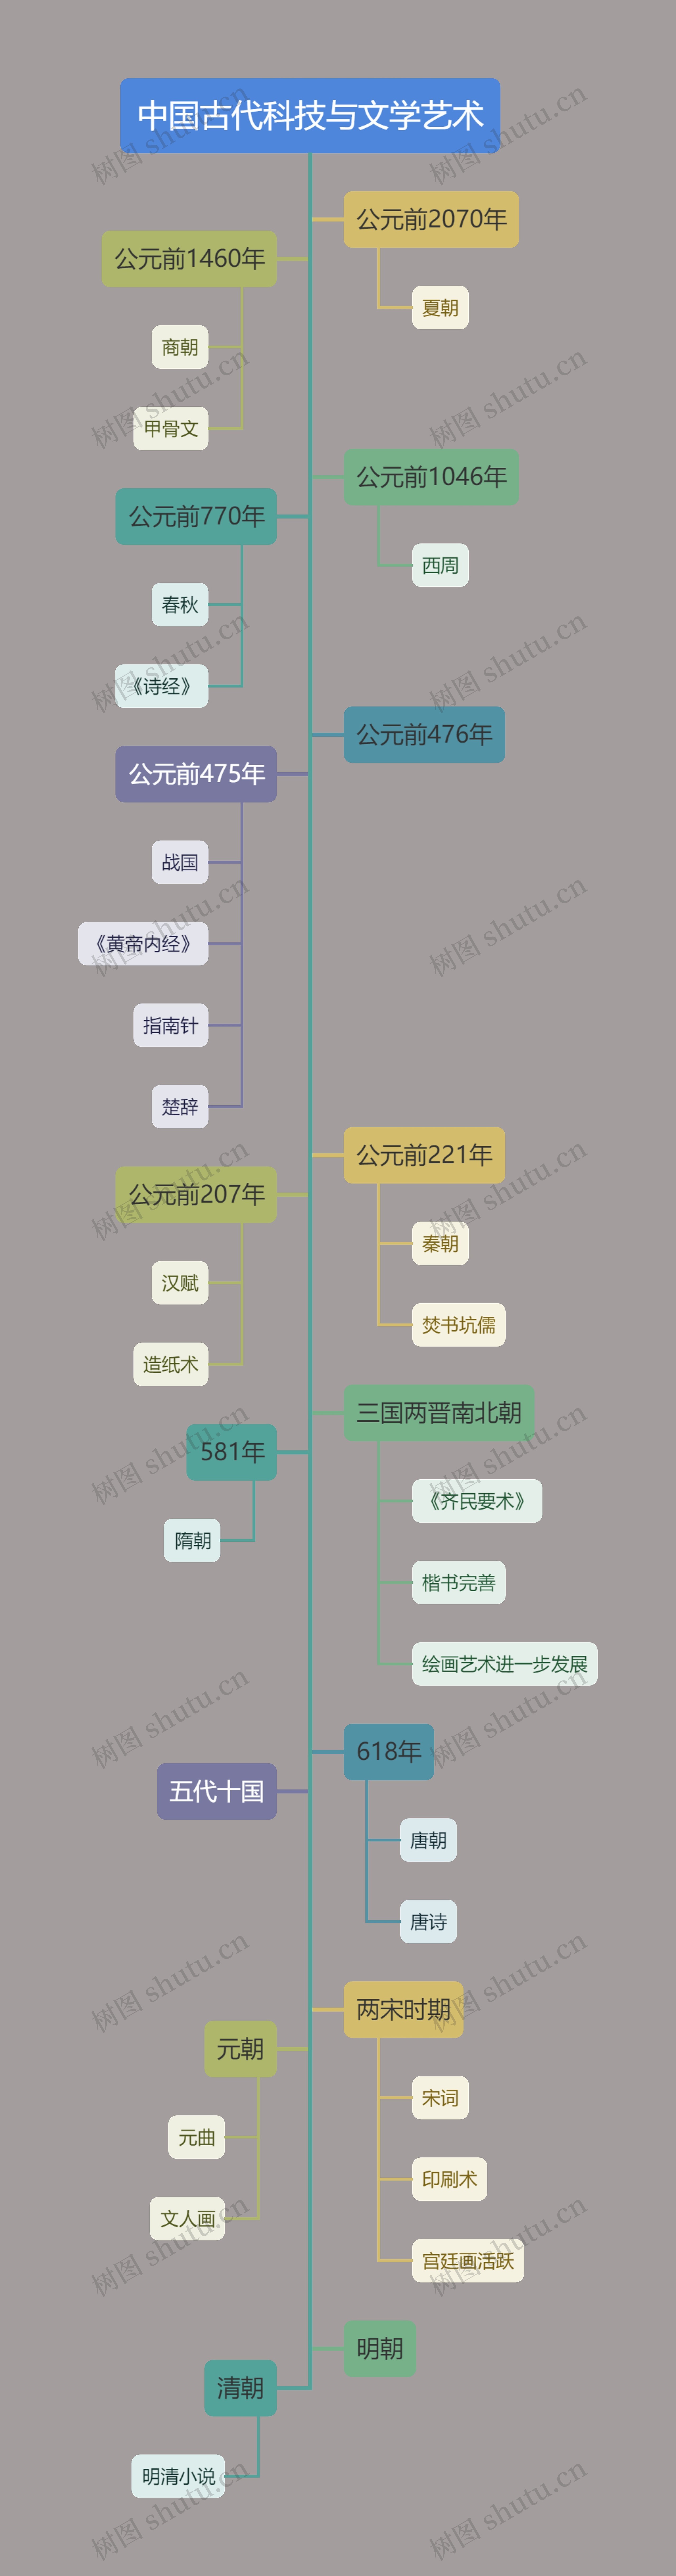 莫兰迪经典色系中国古代科技与文学艺术树状图思维导图